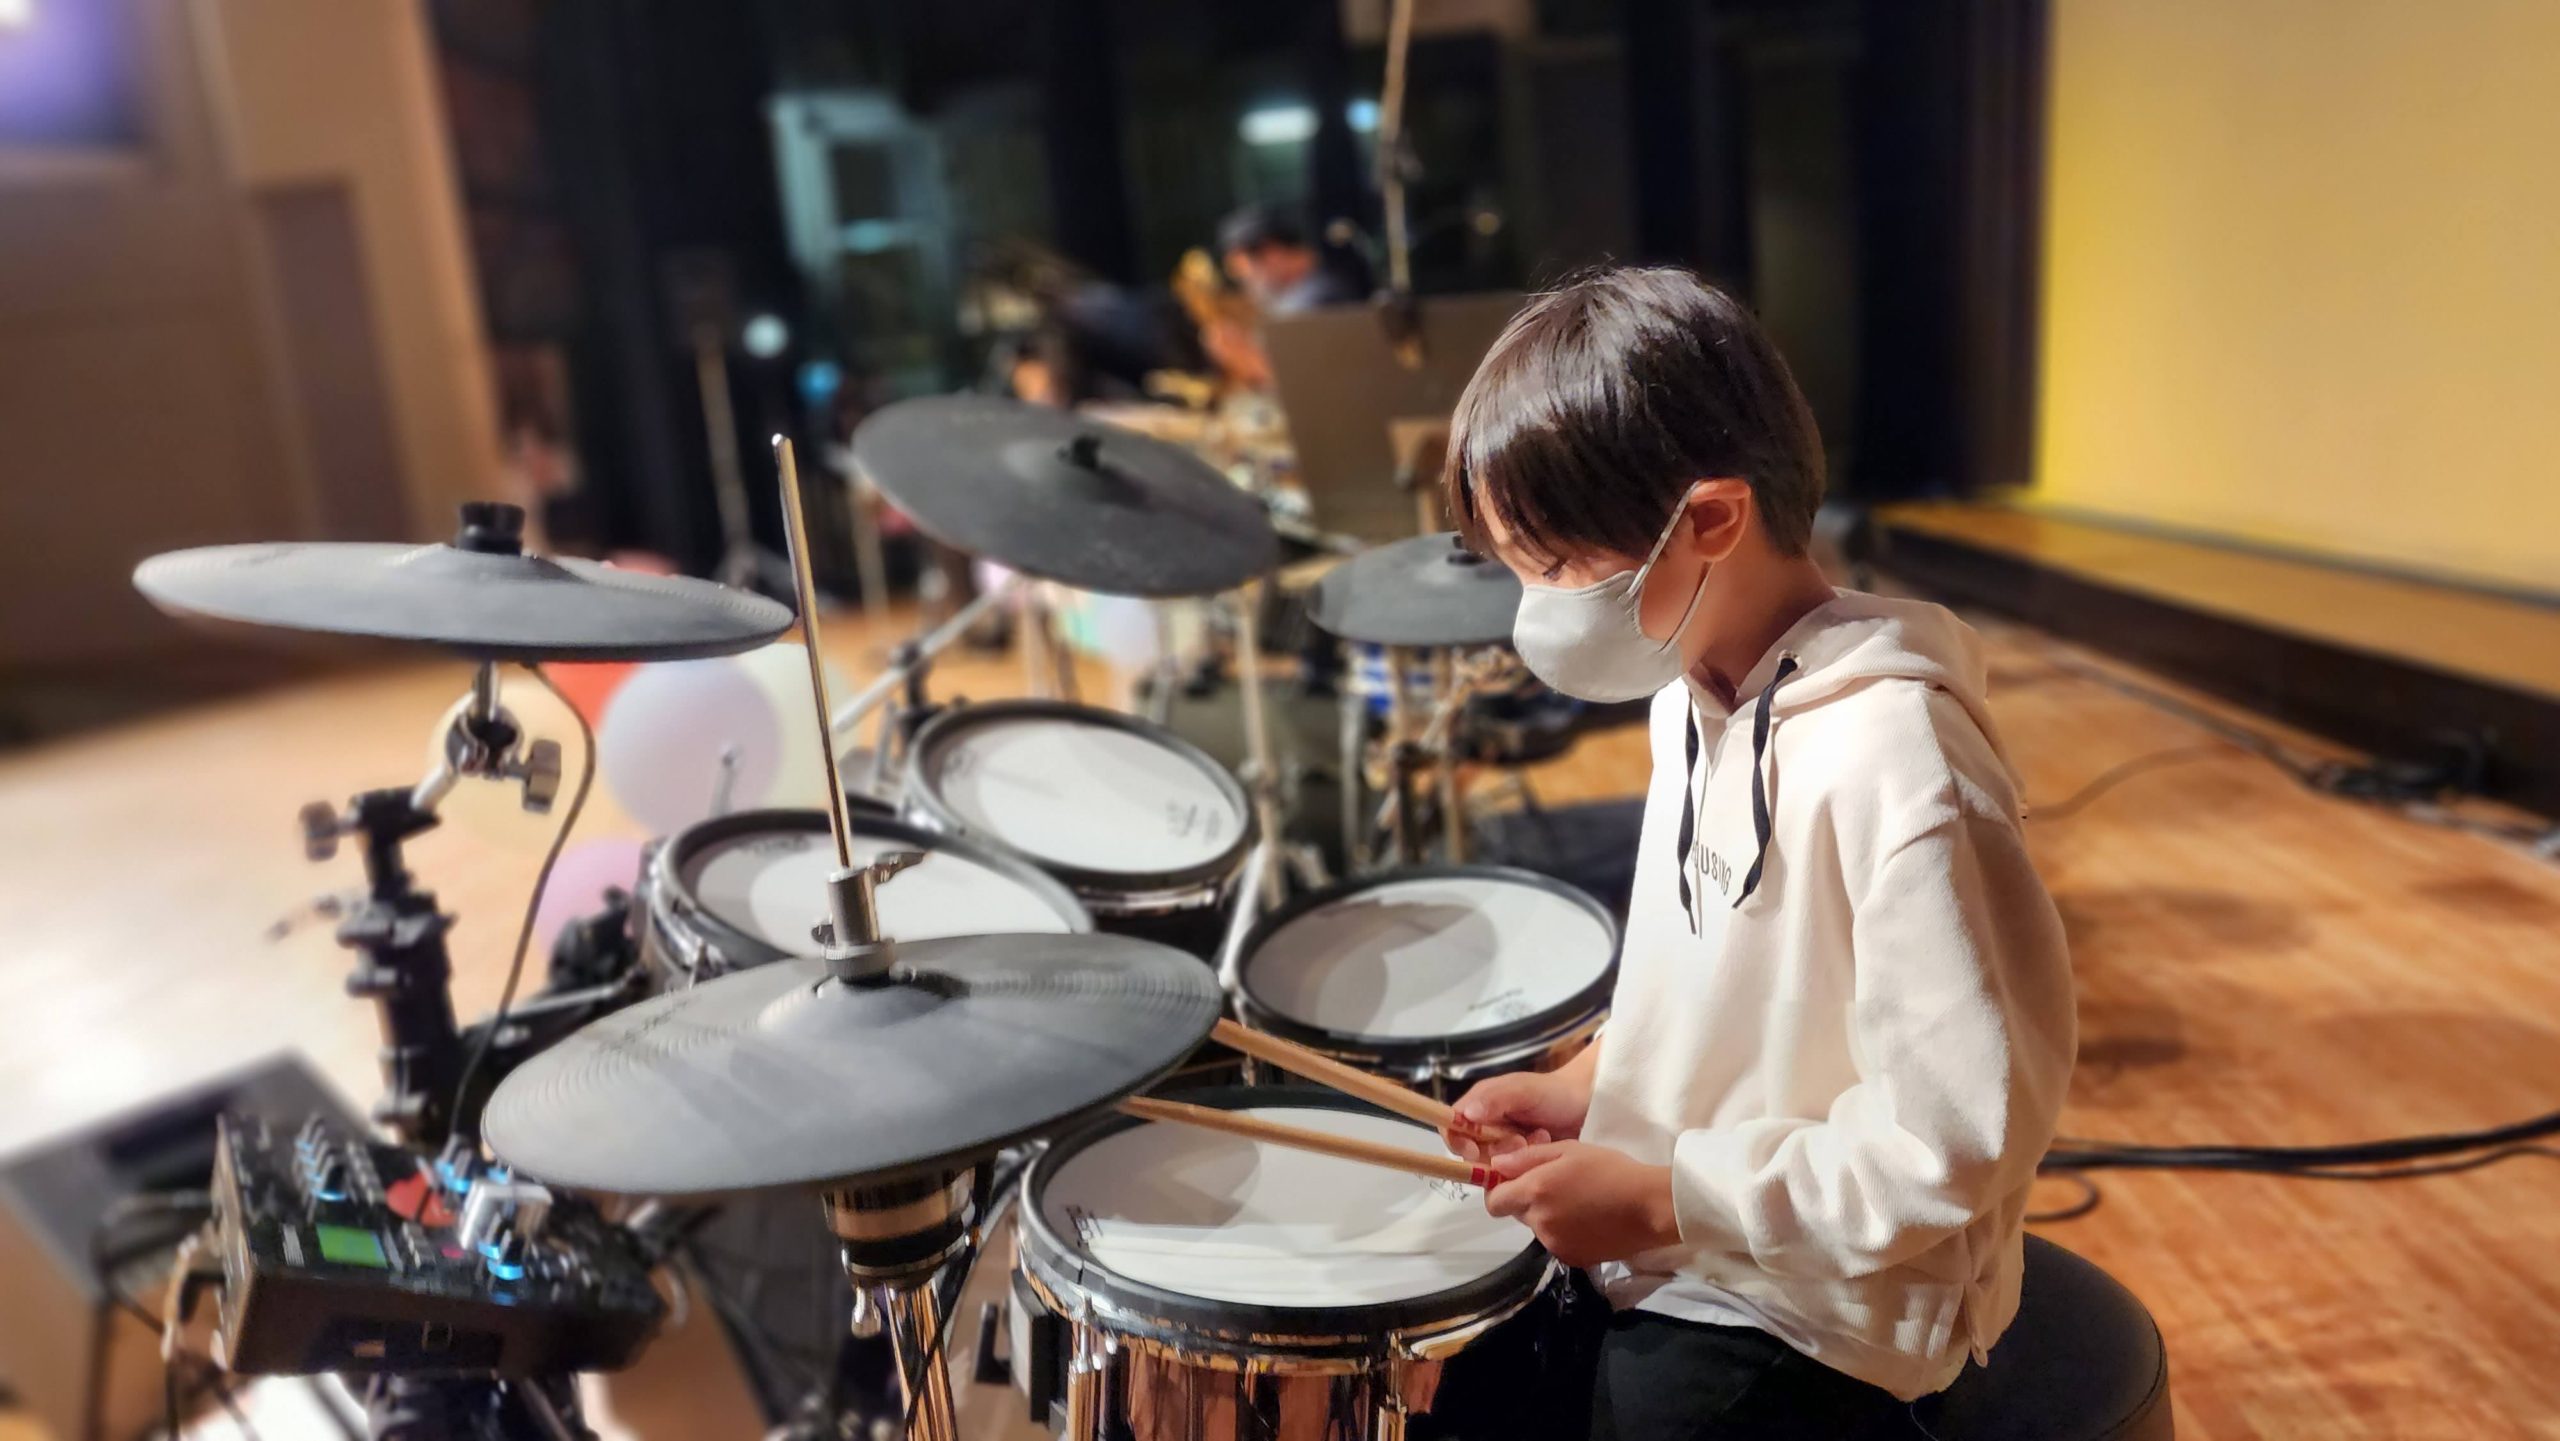 Fucciミュージックスクール
発表会ライブ
ドラム